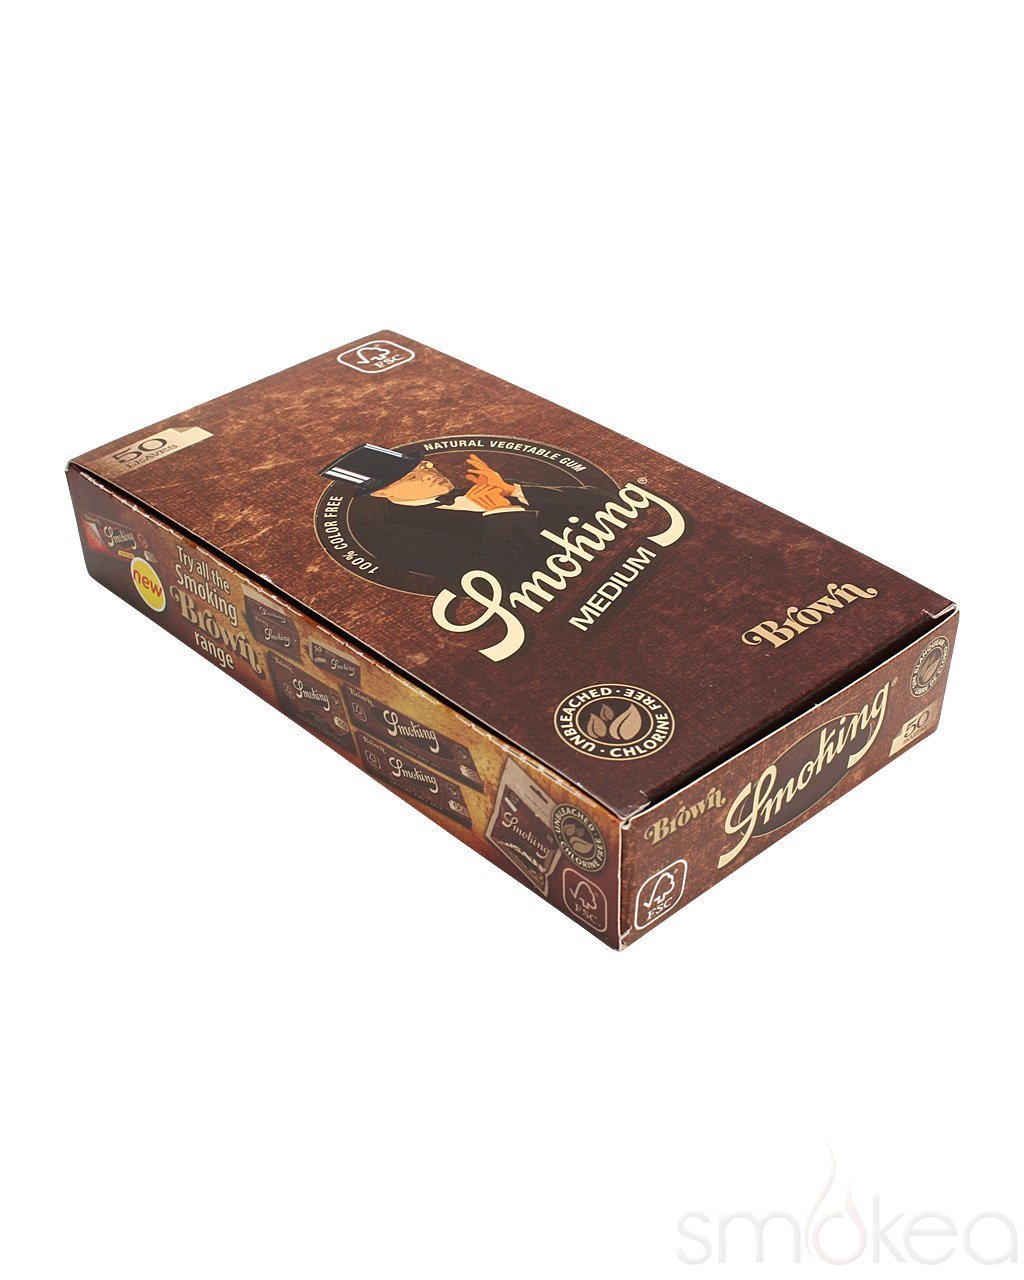 Smoking Brown Medium 1 1/4 Rolling Papers (Full Box) - Bittchaser Smoke Shop